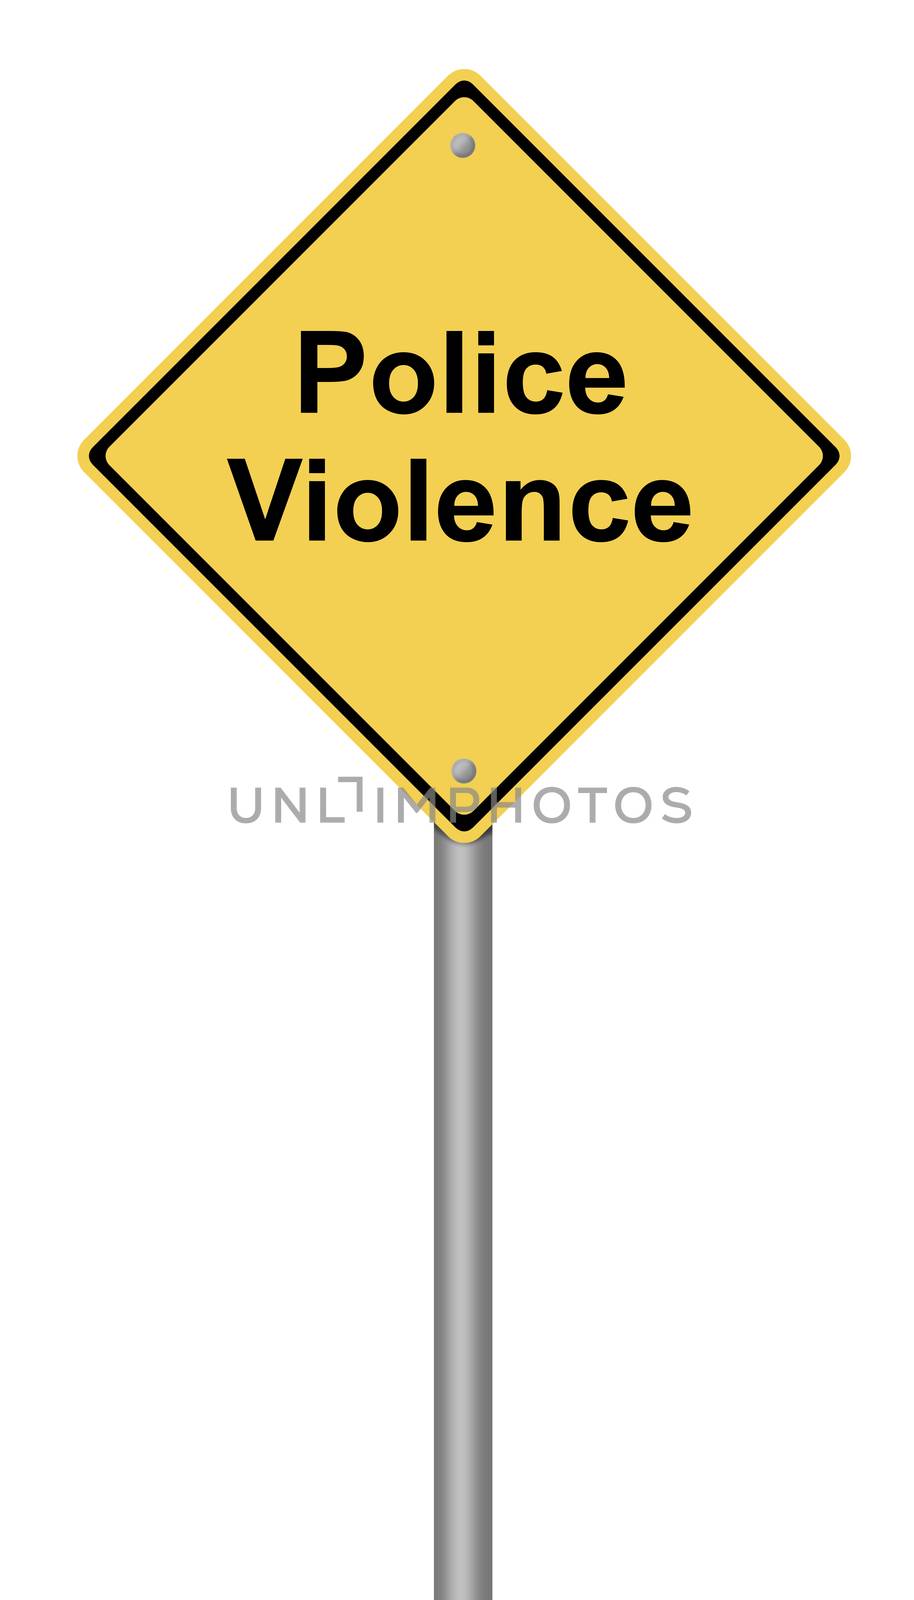 Police Violence by hlehnerer